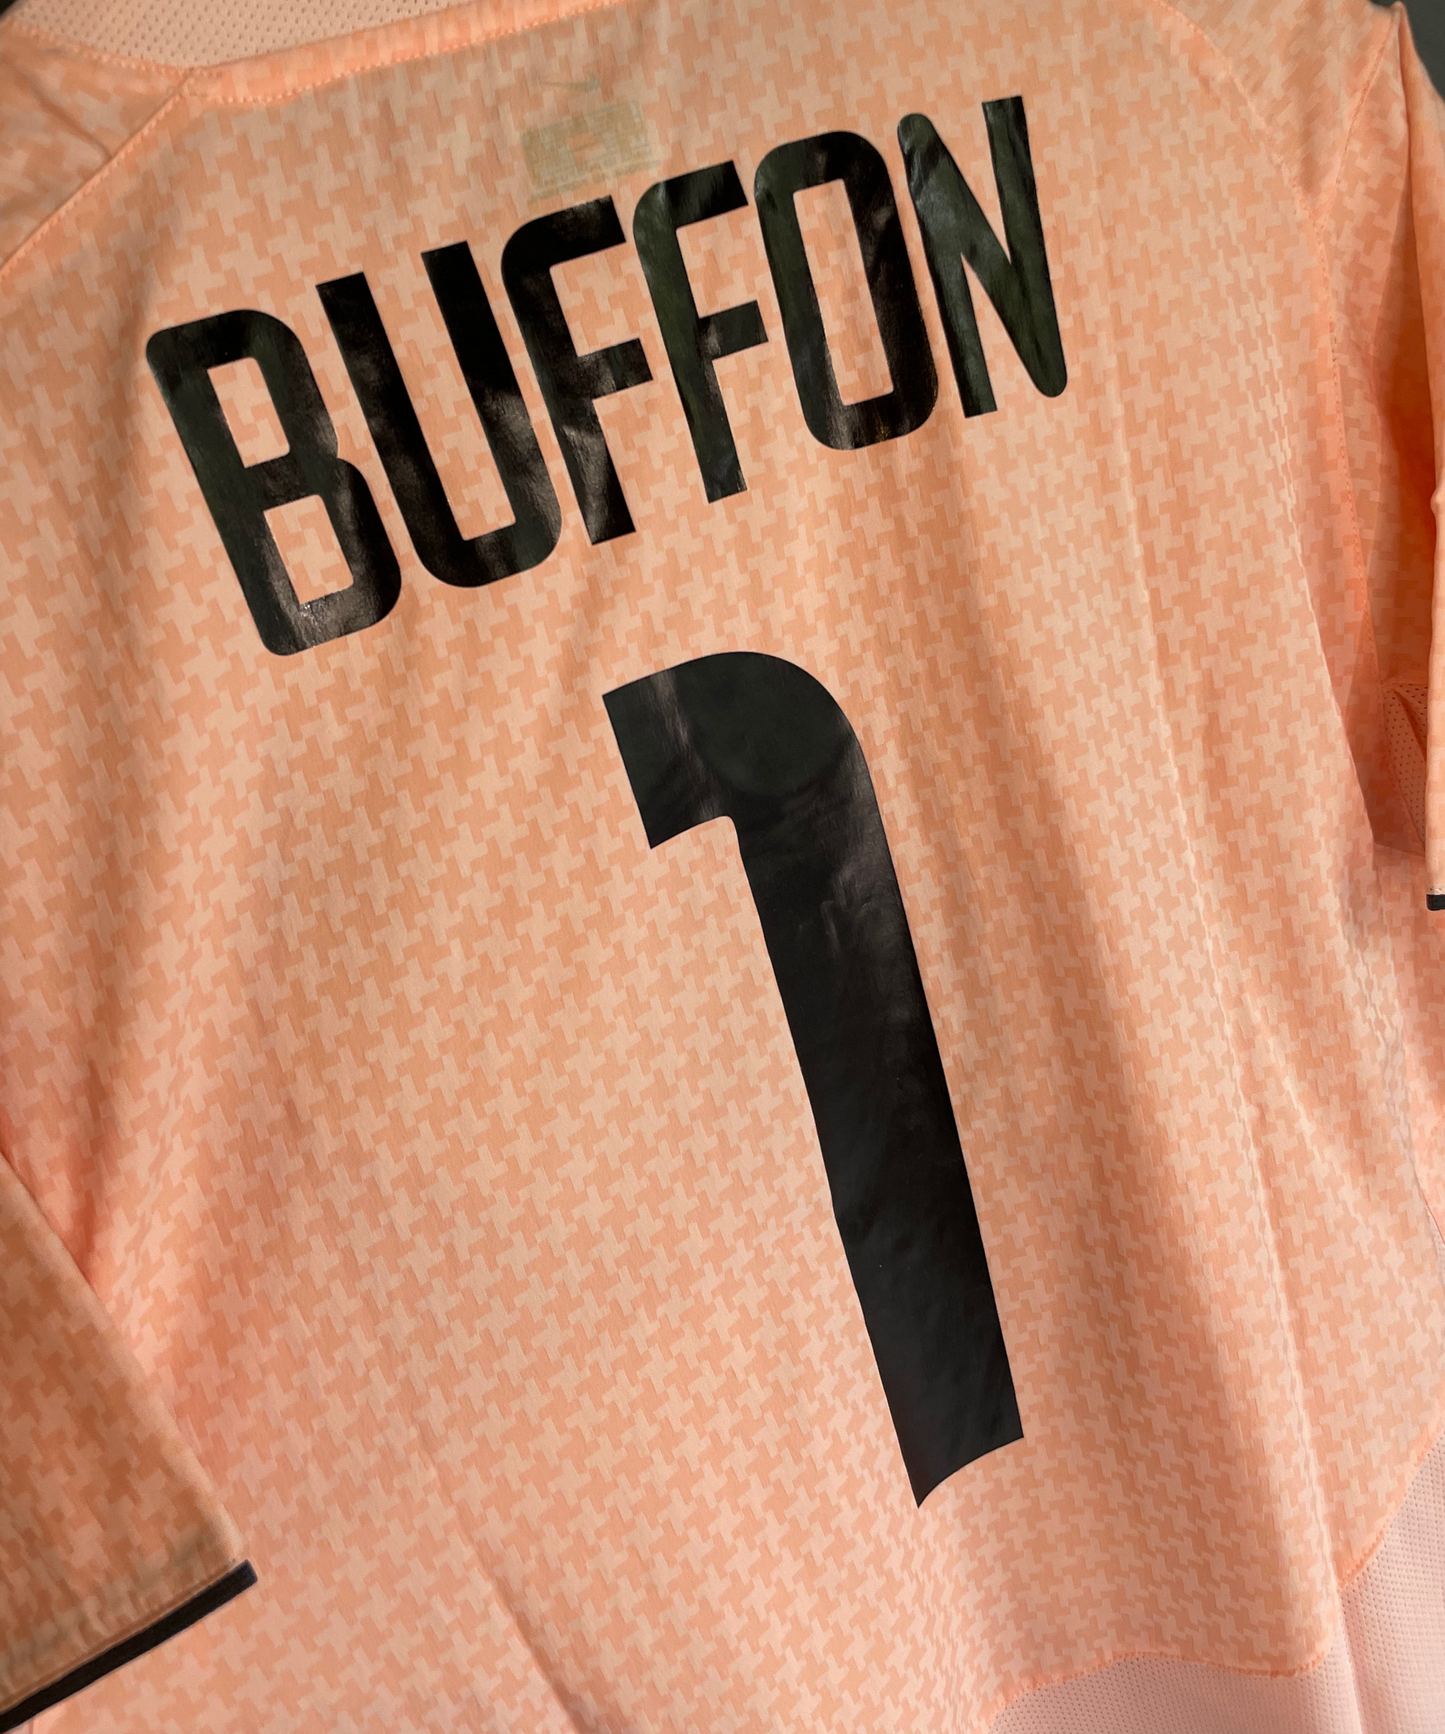 Juventus FC 2003/04 Buffon GK Kit (M)